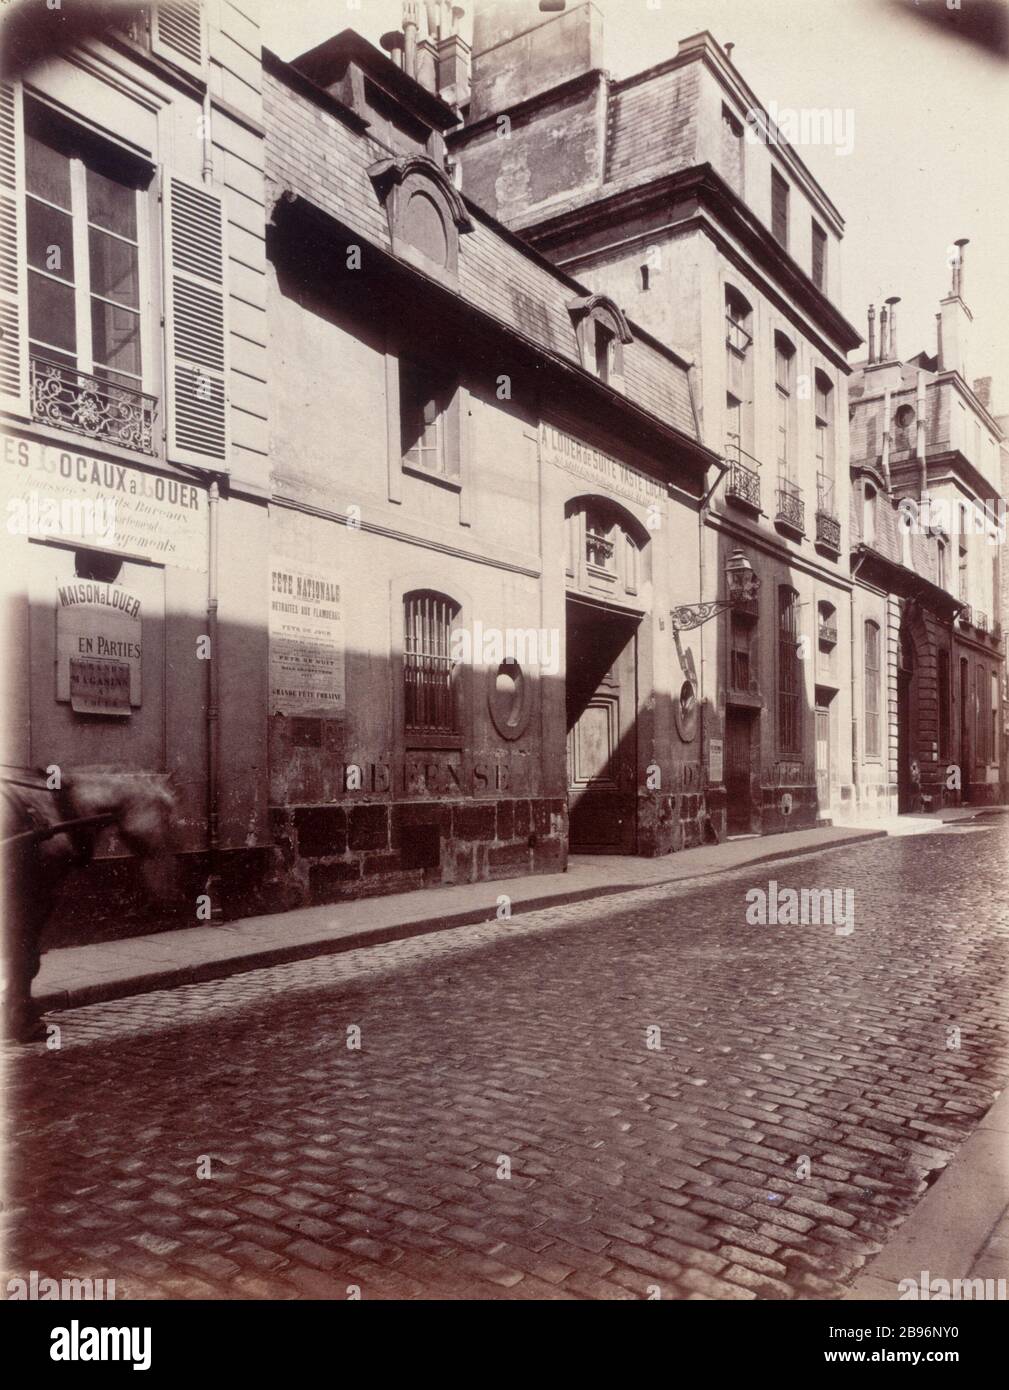 HOTEL Crussol 10, rue Barbette, Hôtel de Crussol. Paris (IIIème arrondissement). Photographie d'Eugène Atget (1857-1927). Paris, musée Carnavalet. Stock Photo